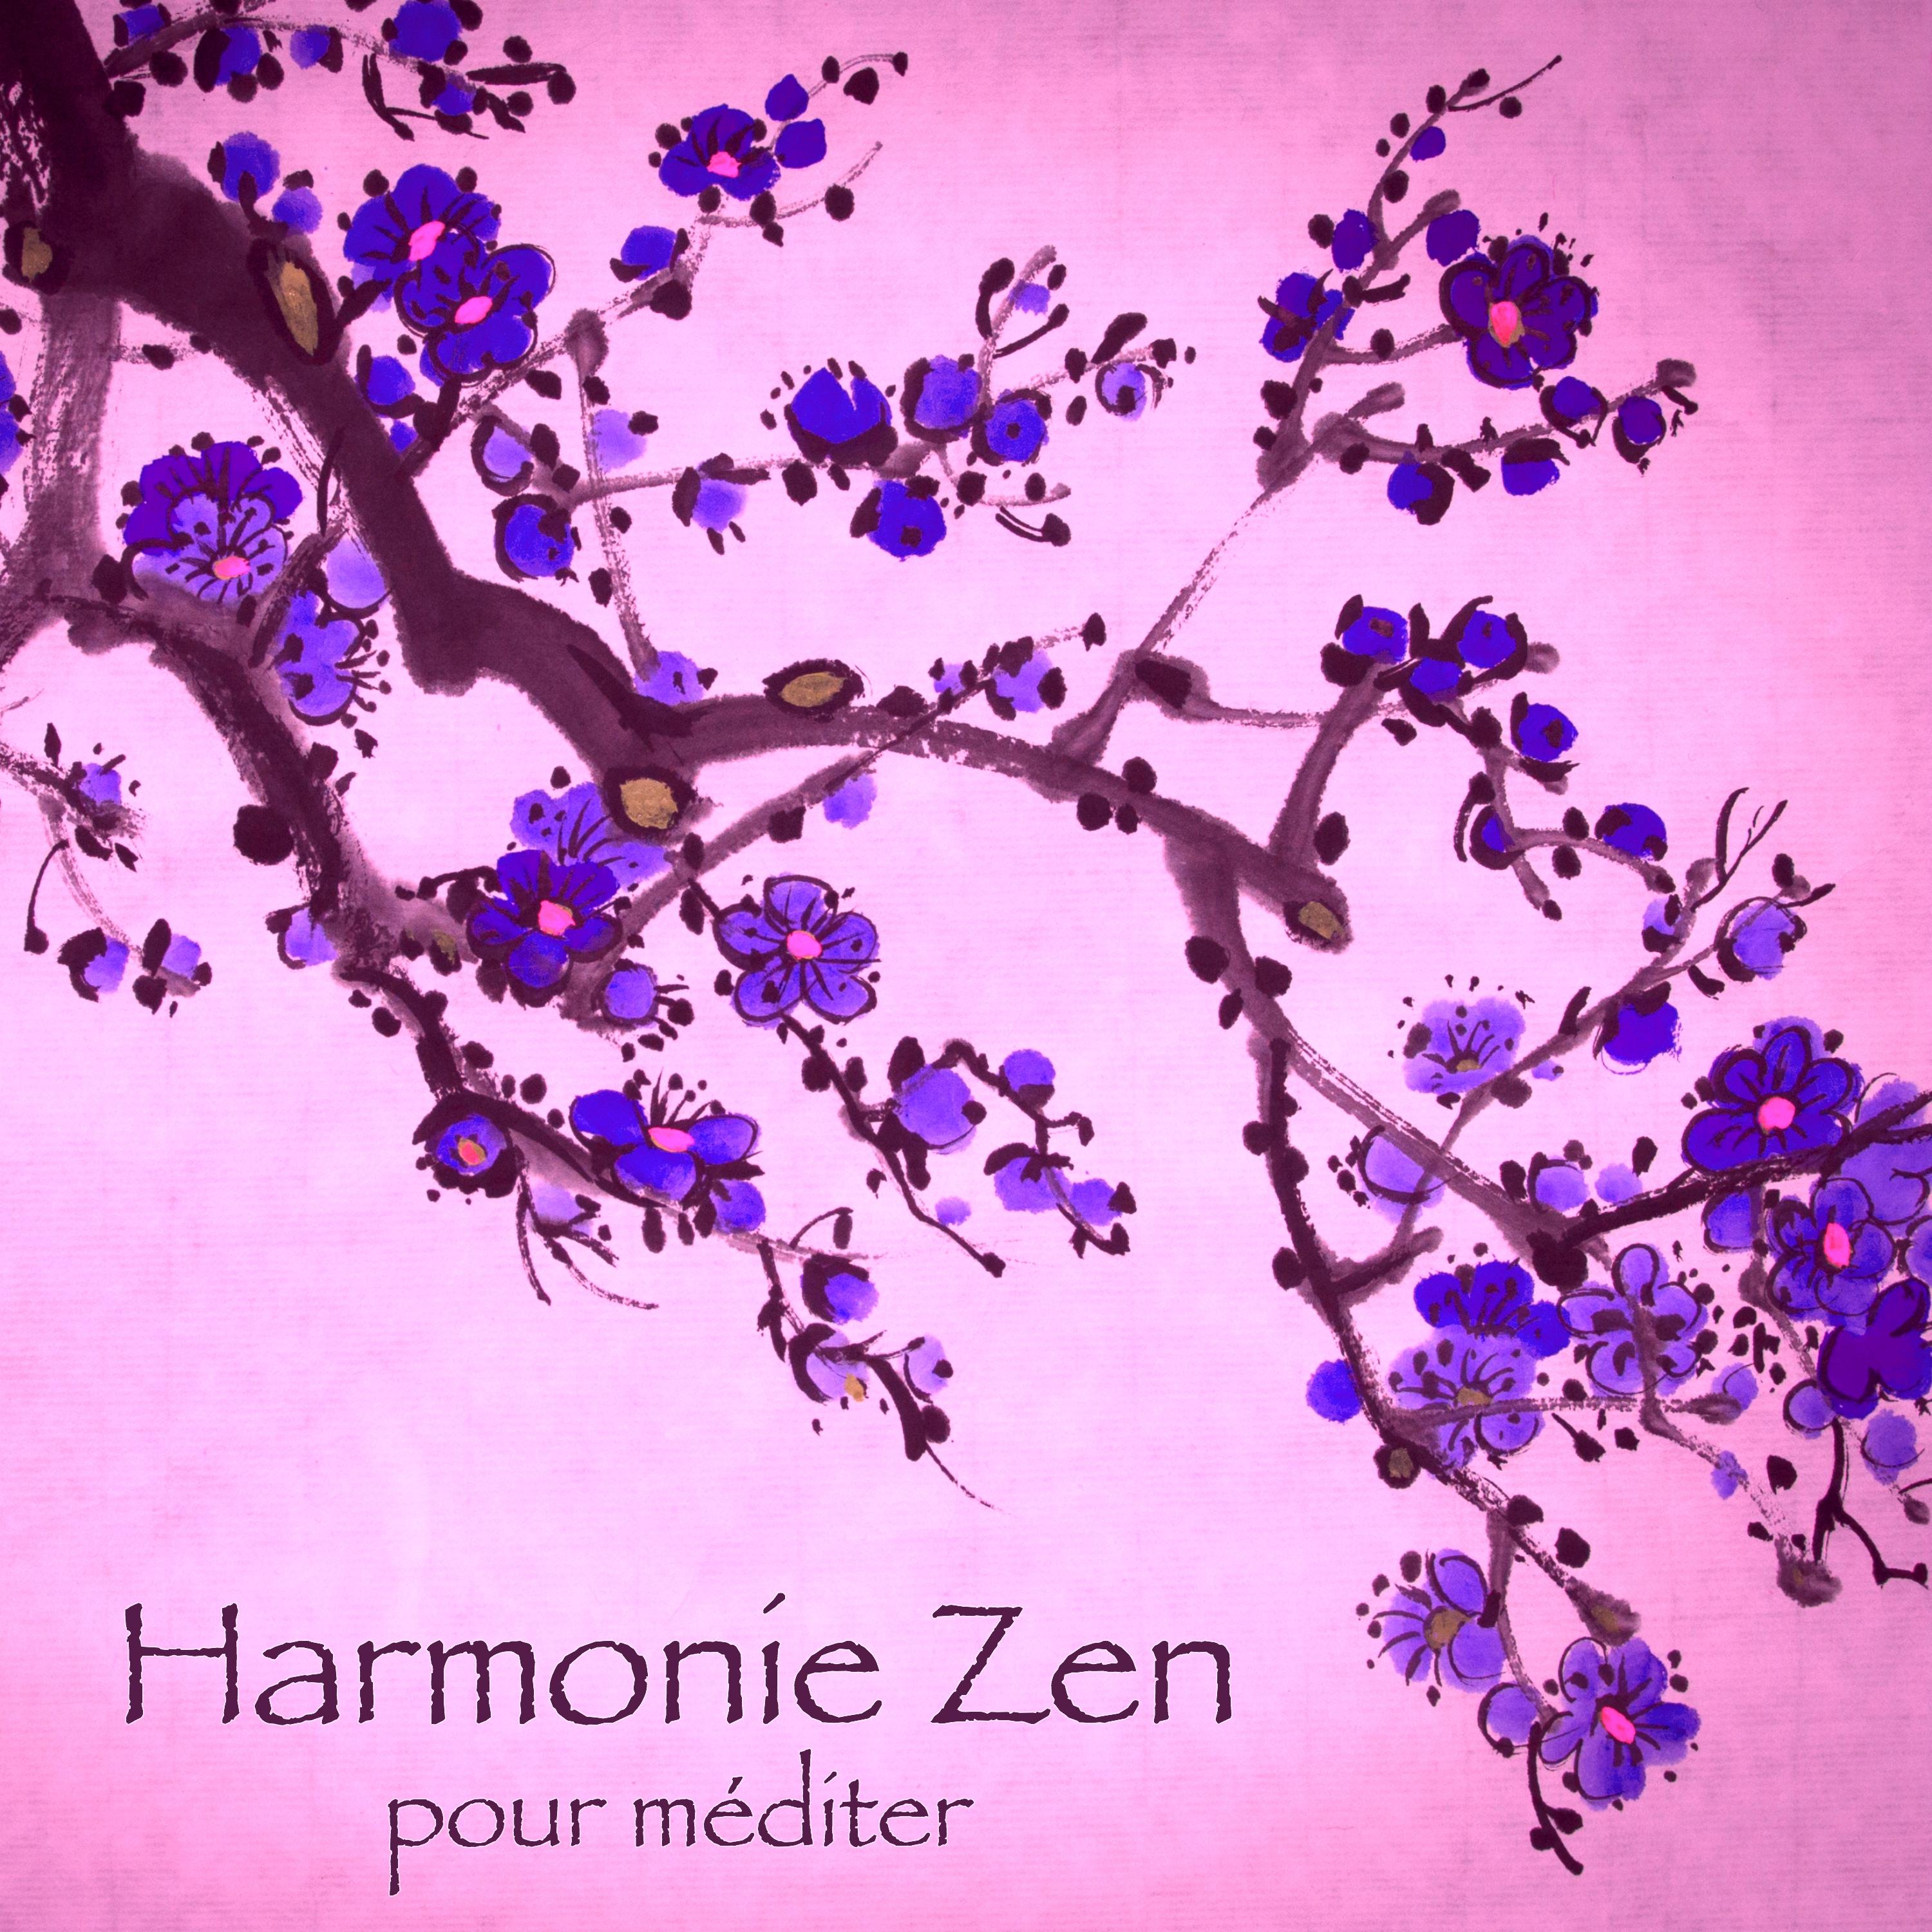 Harmonie zen pour méditer – Musique relaxante de bien-être et feng shui dans votre espace zen pour yoga et méditation